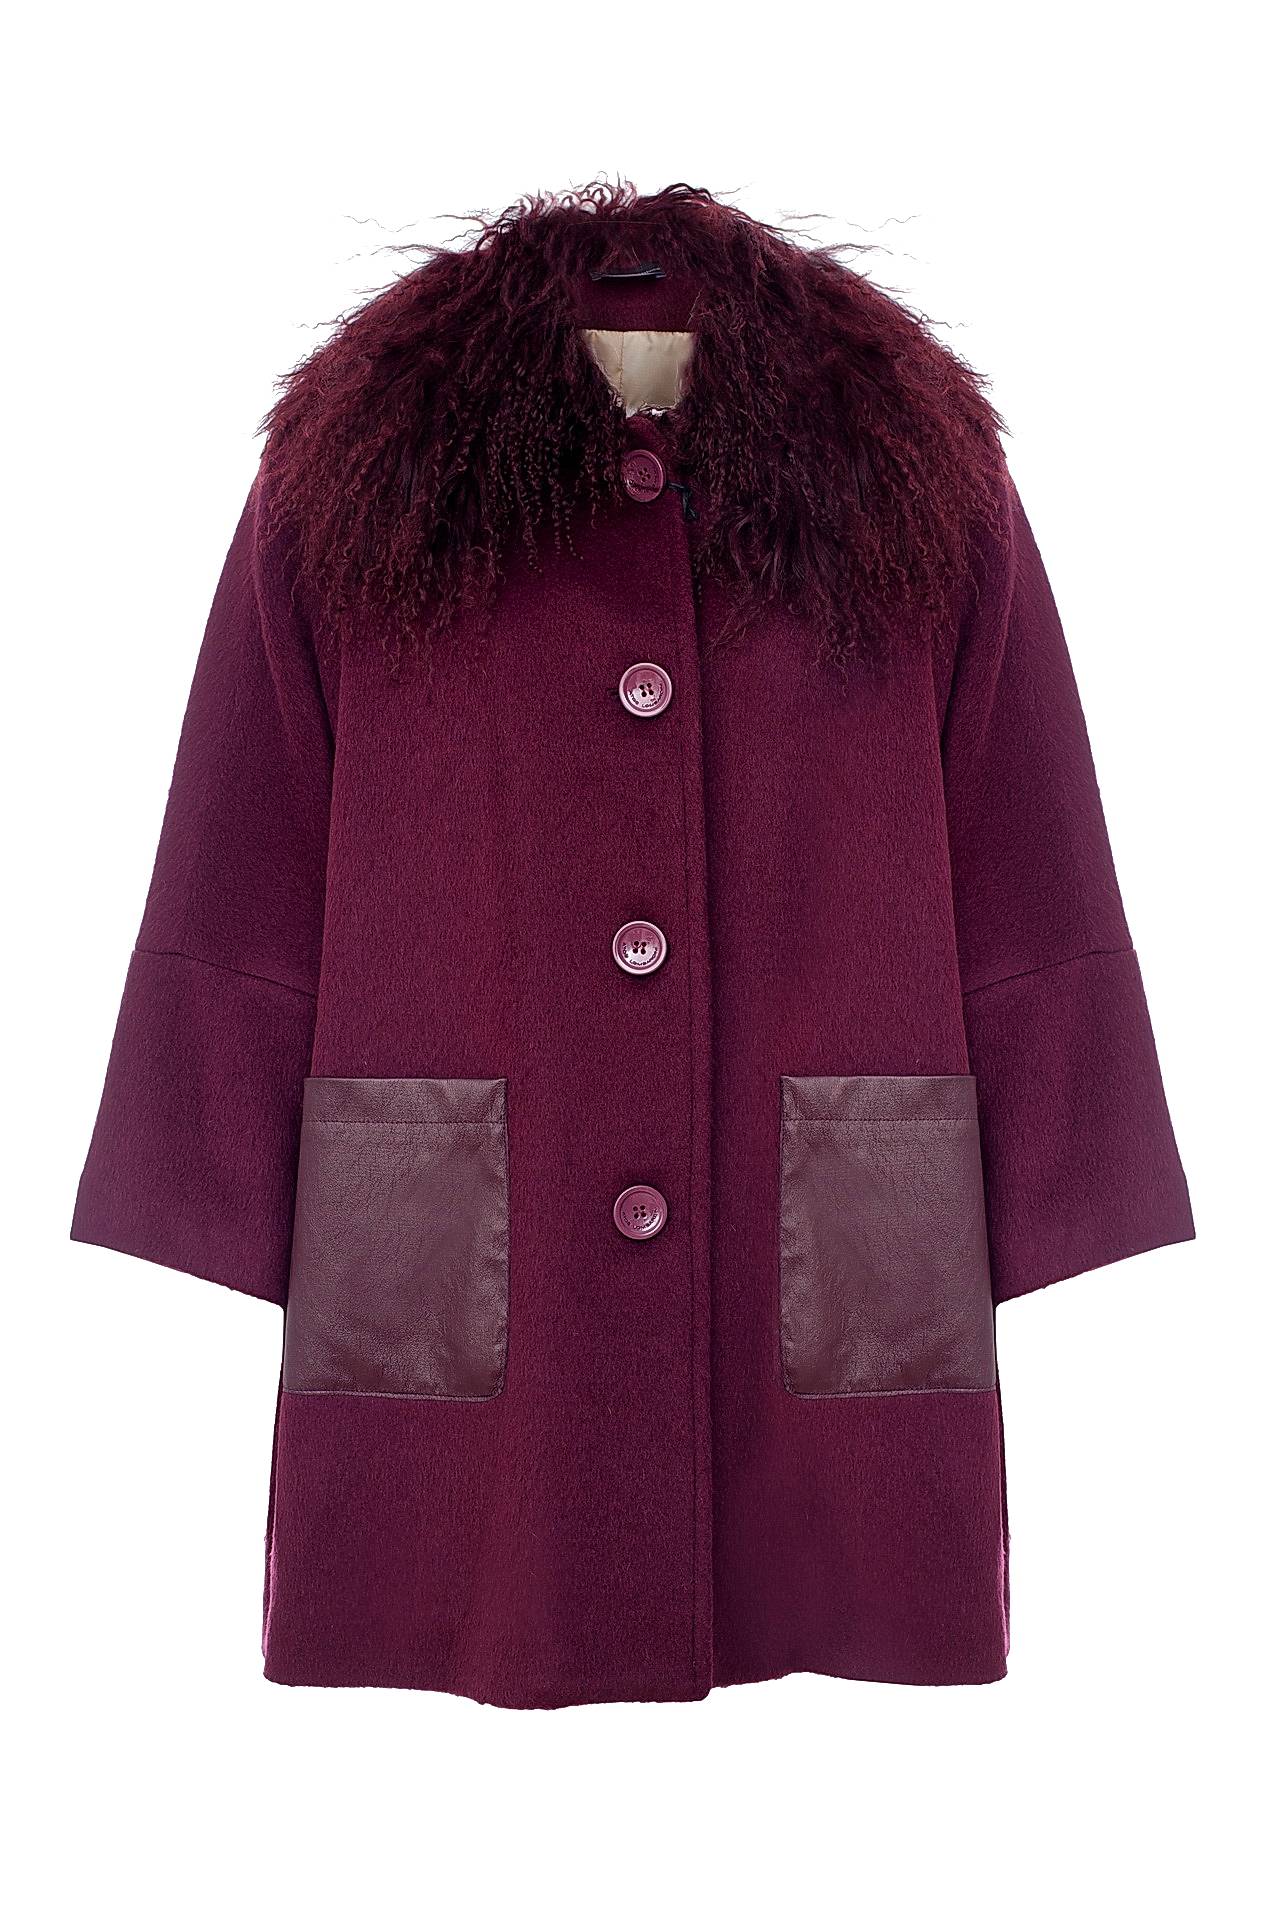 Одежда женская Пальто ATOS LOMBARDINI (A6PP09019/17.1). Купить за 19450 руб.